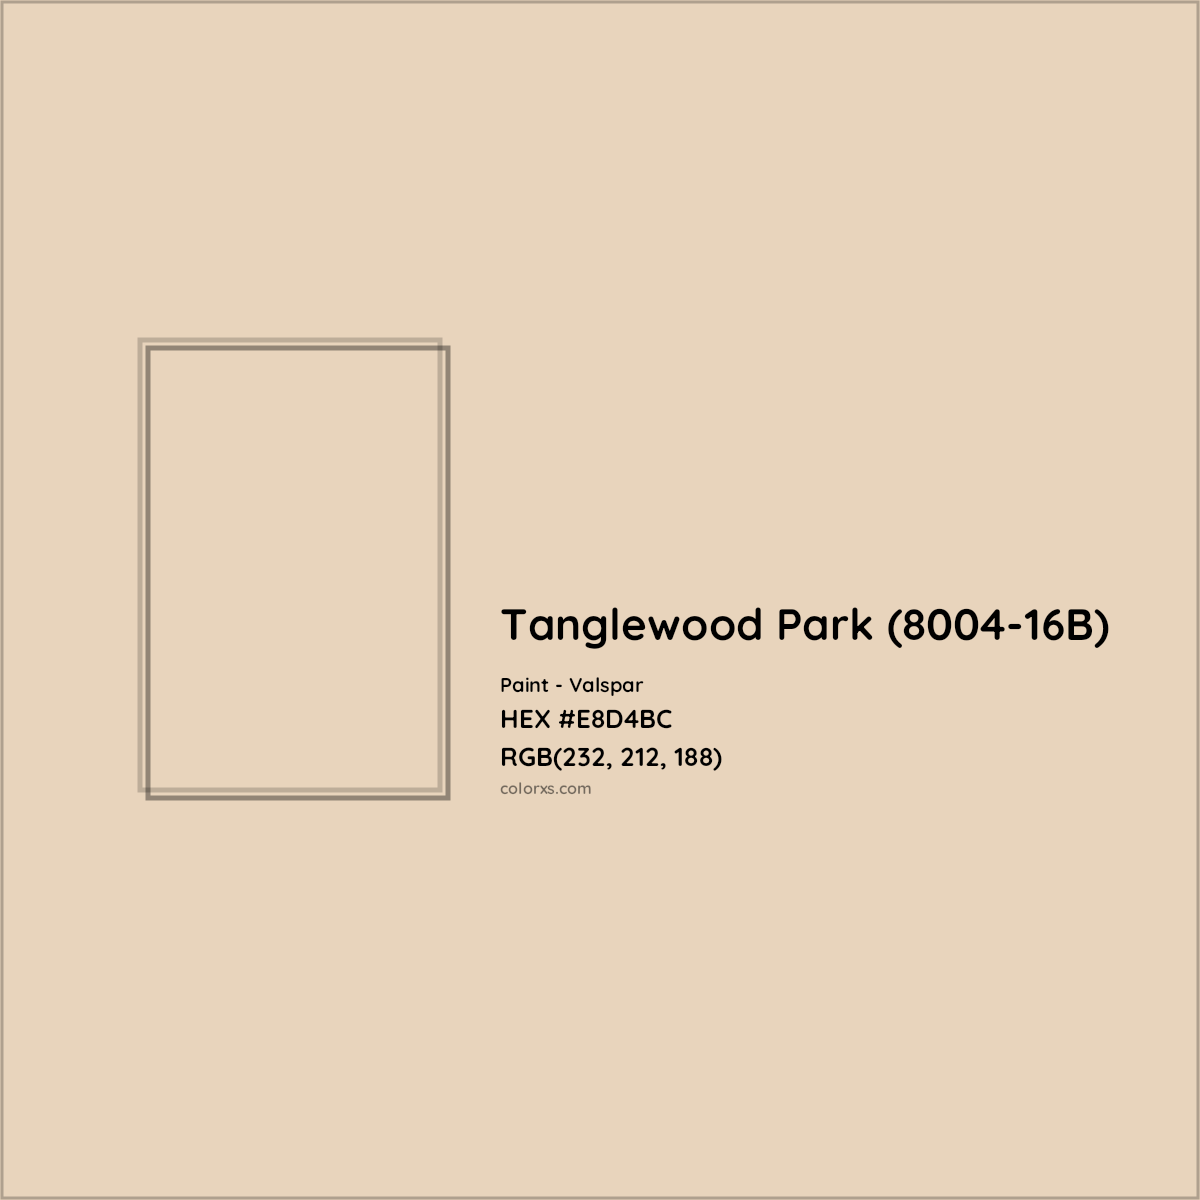 HEX #E8D4BC Tanglewood Park (8004-16B) Paint Valspar - Color Code